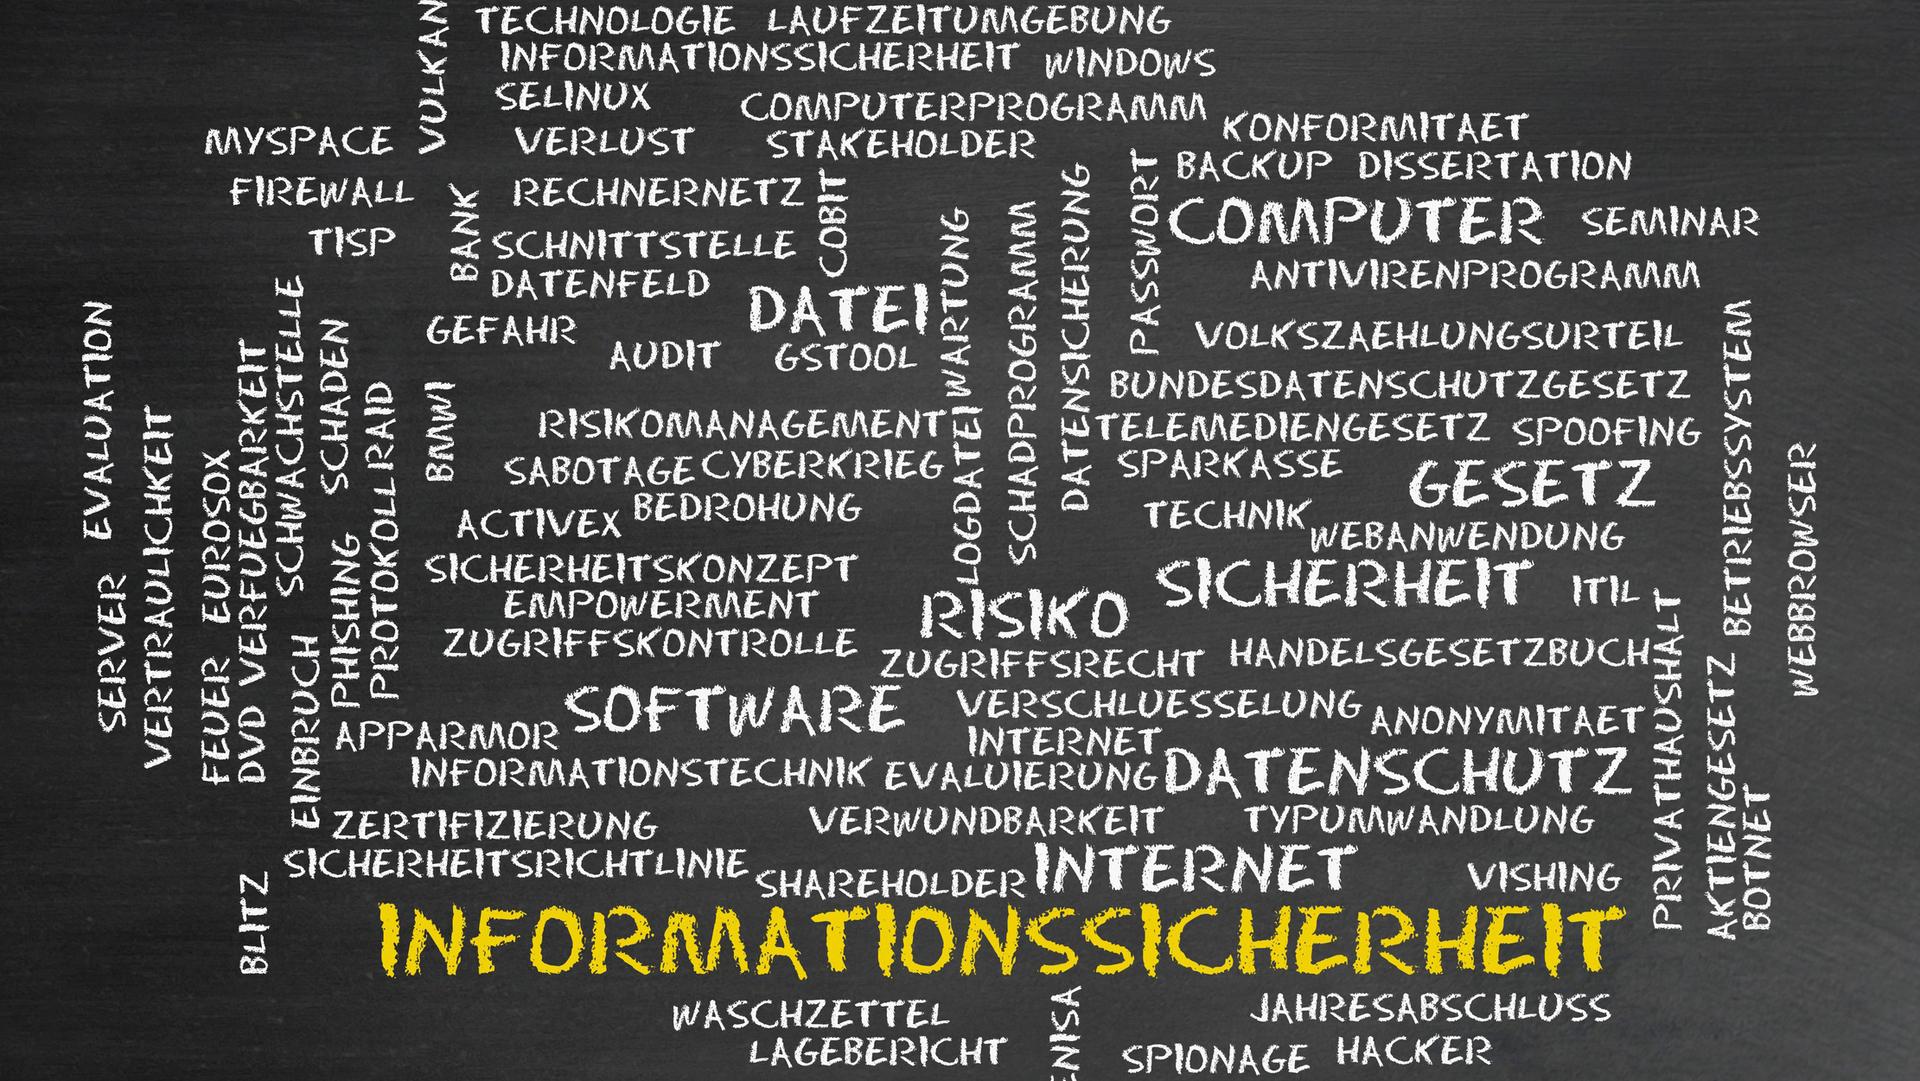 BWV Bildungsverband Informationssicherheit